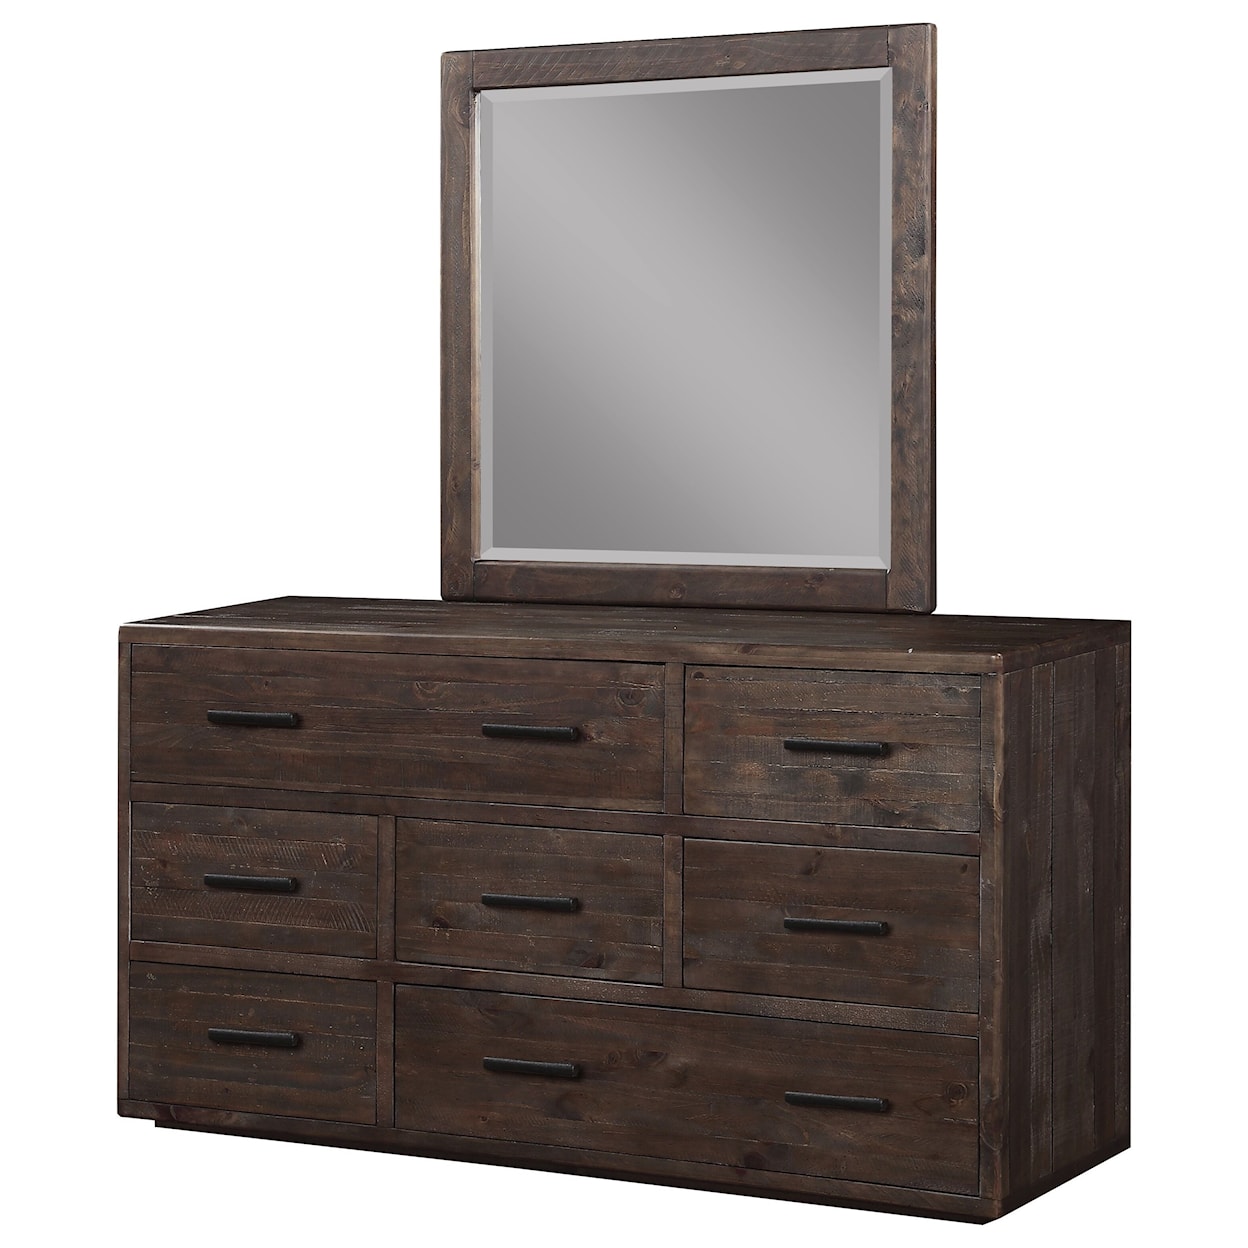 Modus International McKinney Dresser and Mirror Combination